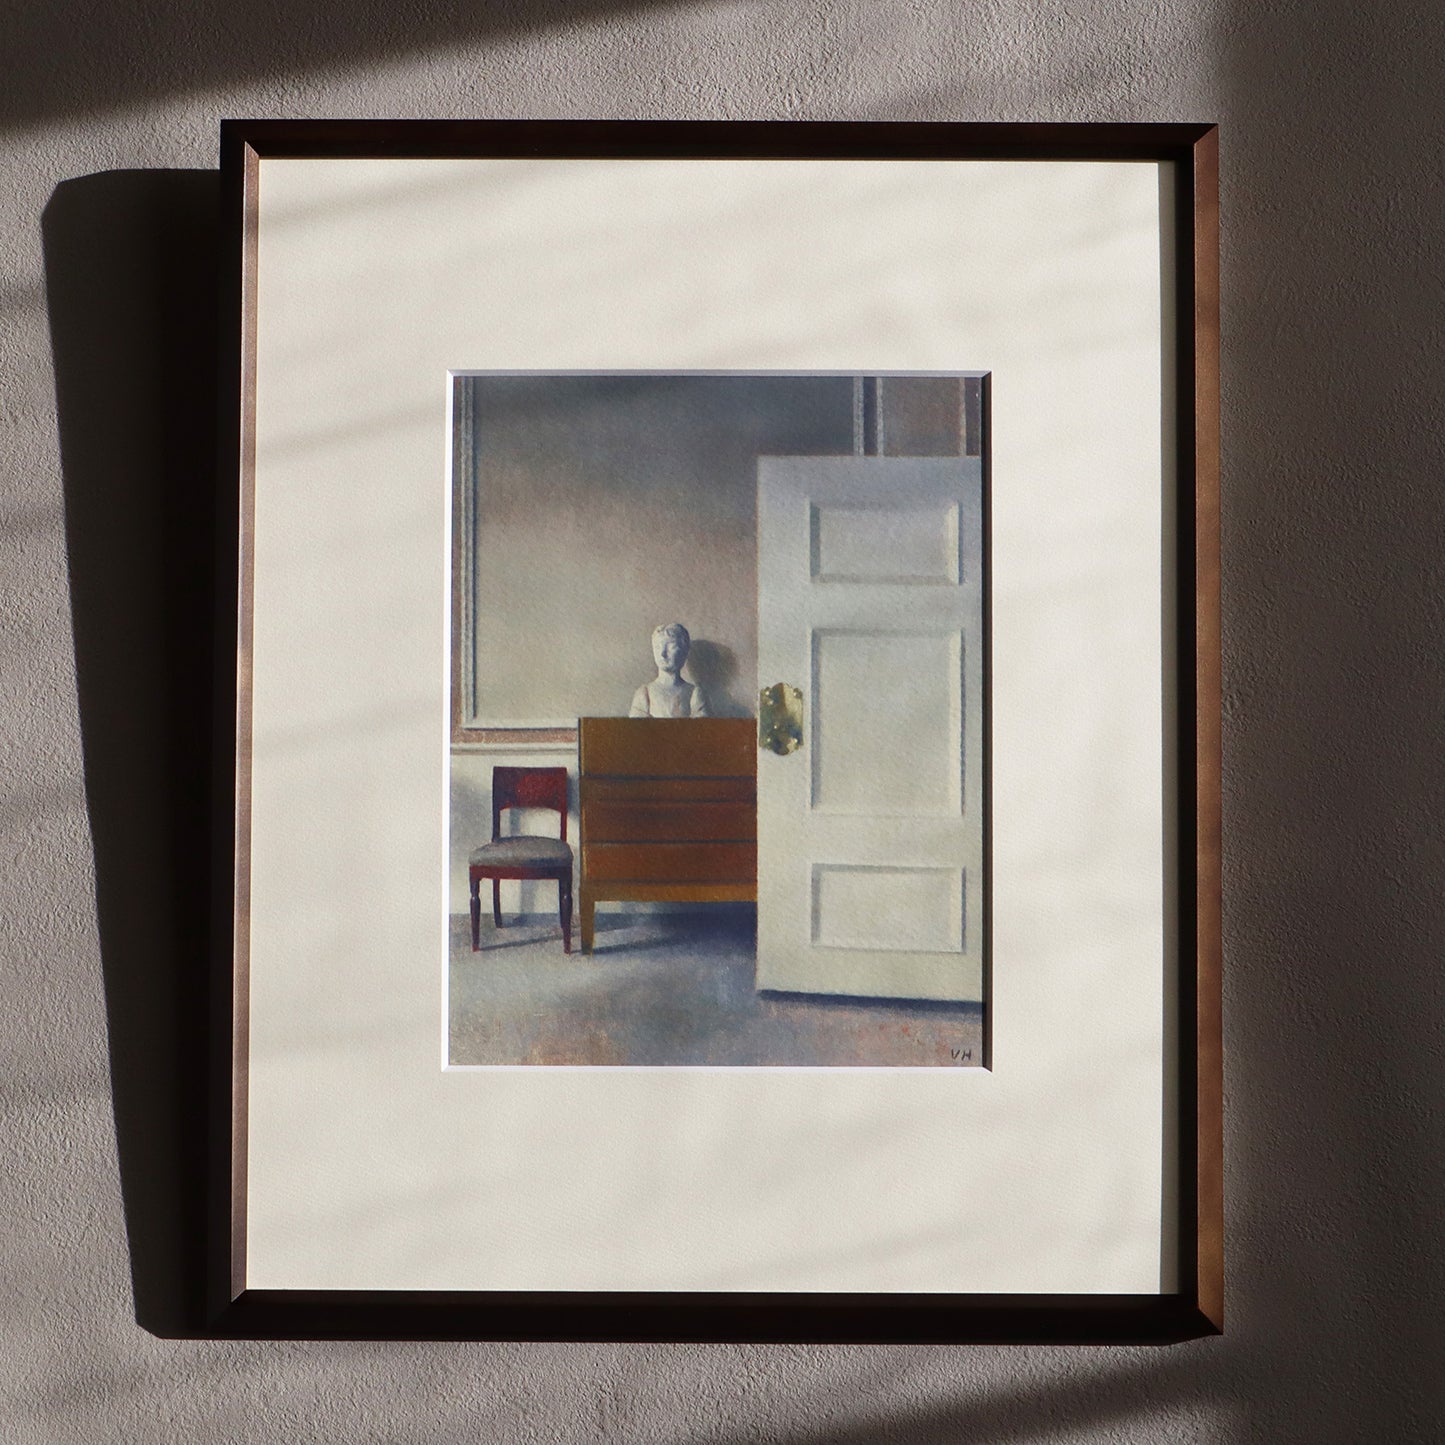 ヴィルヘルム・ハマスホイ 「胸像のある室内」アートポスター（フレーム付き） / Vilhelm Hammershøi “Interior with a bust” Art Frame